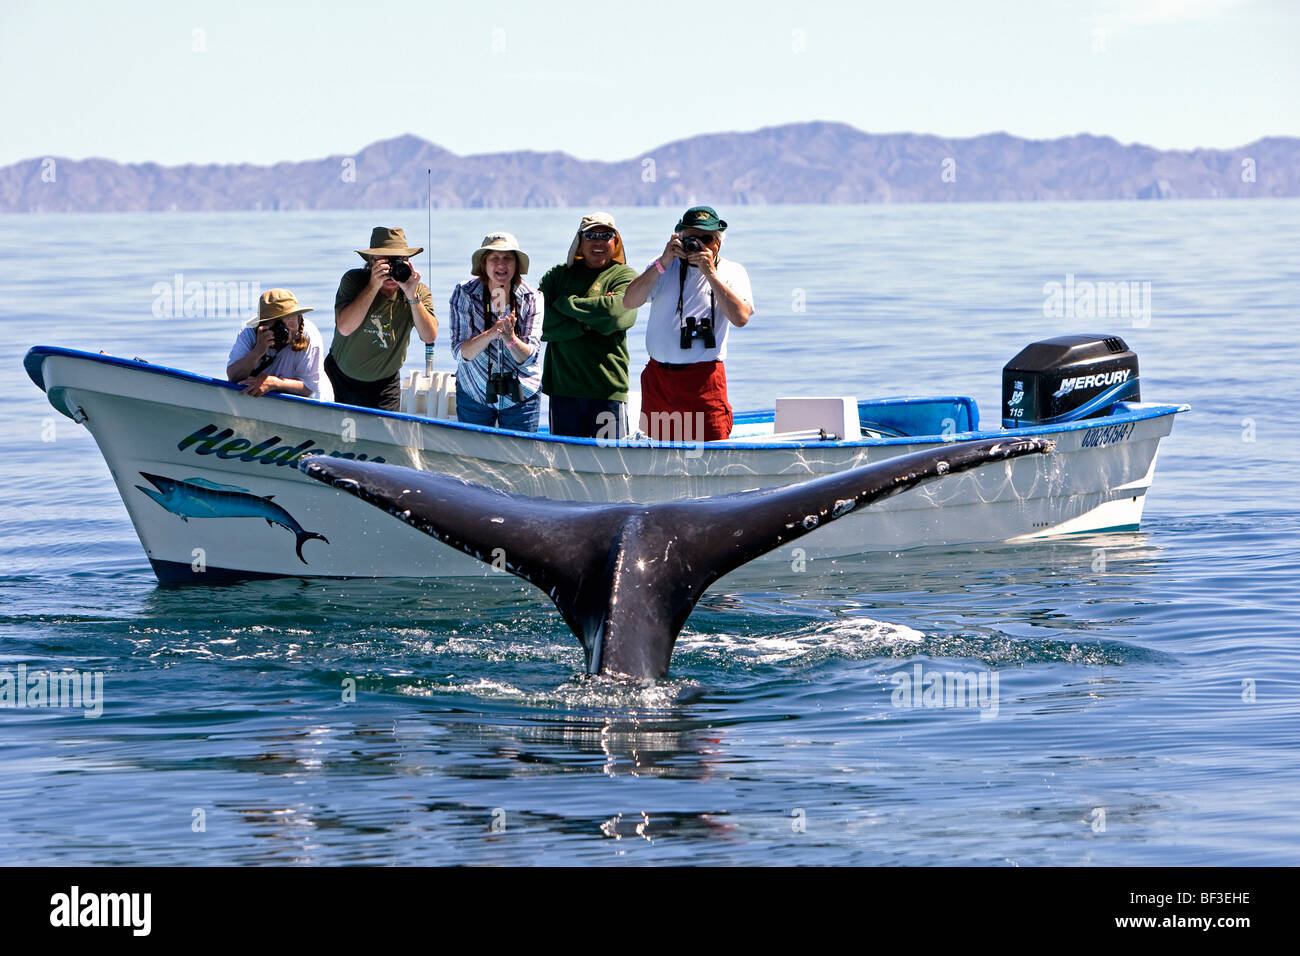 La ballena jorobada (Megaptera novaeangliae). Observadores de ballenas viendo ballenas buceo. Foto de stock